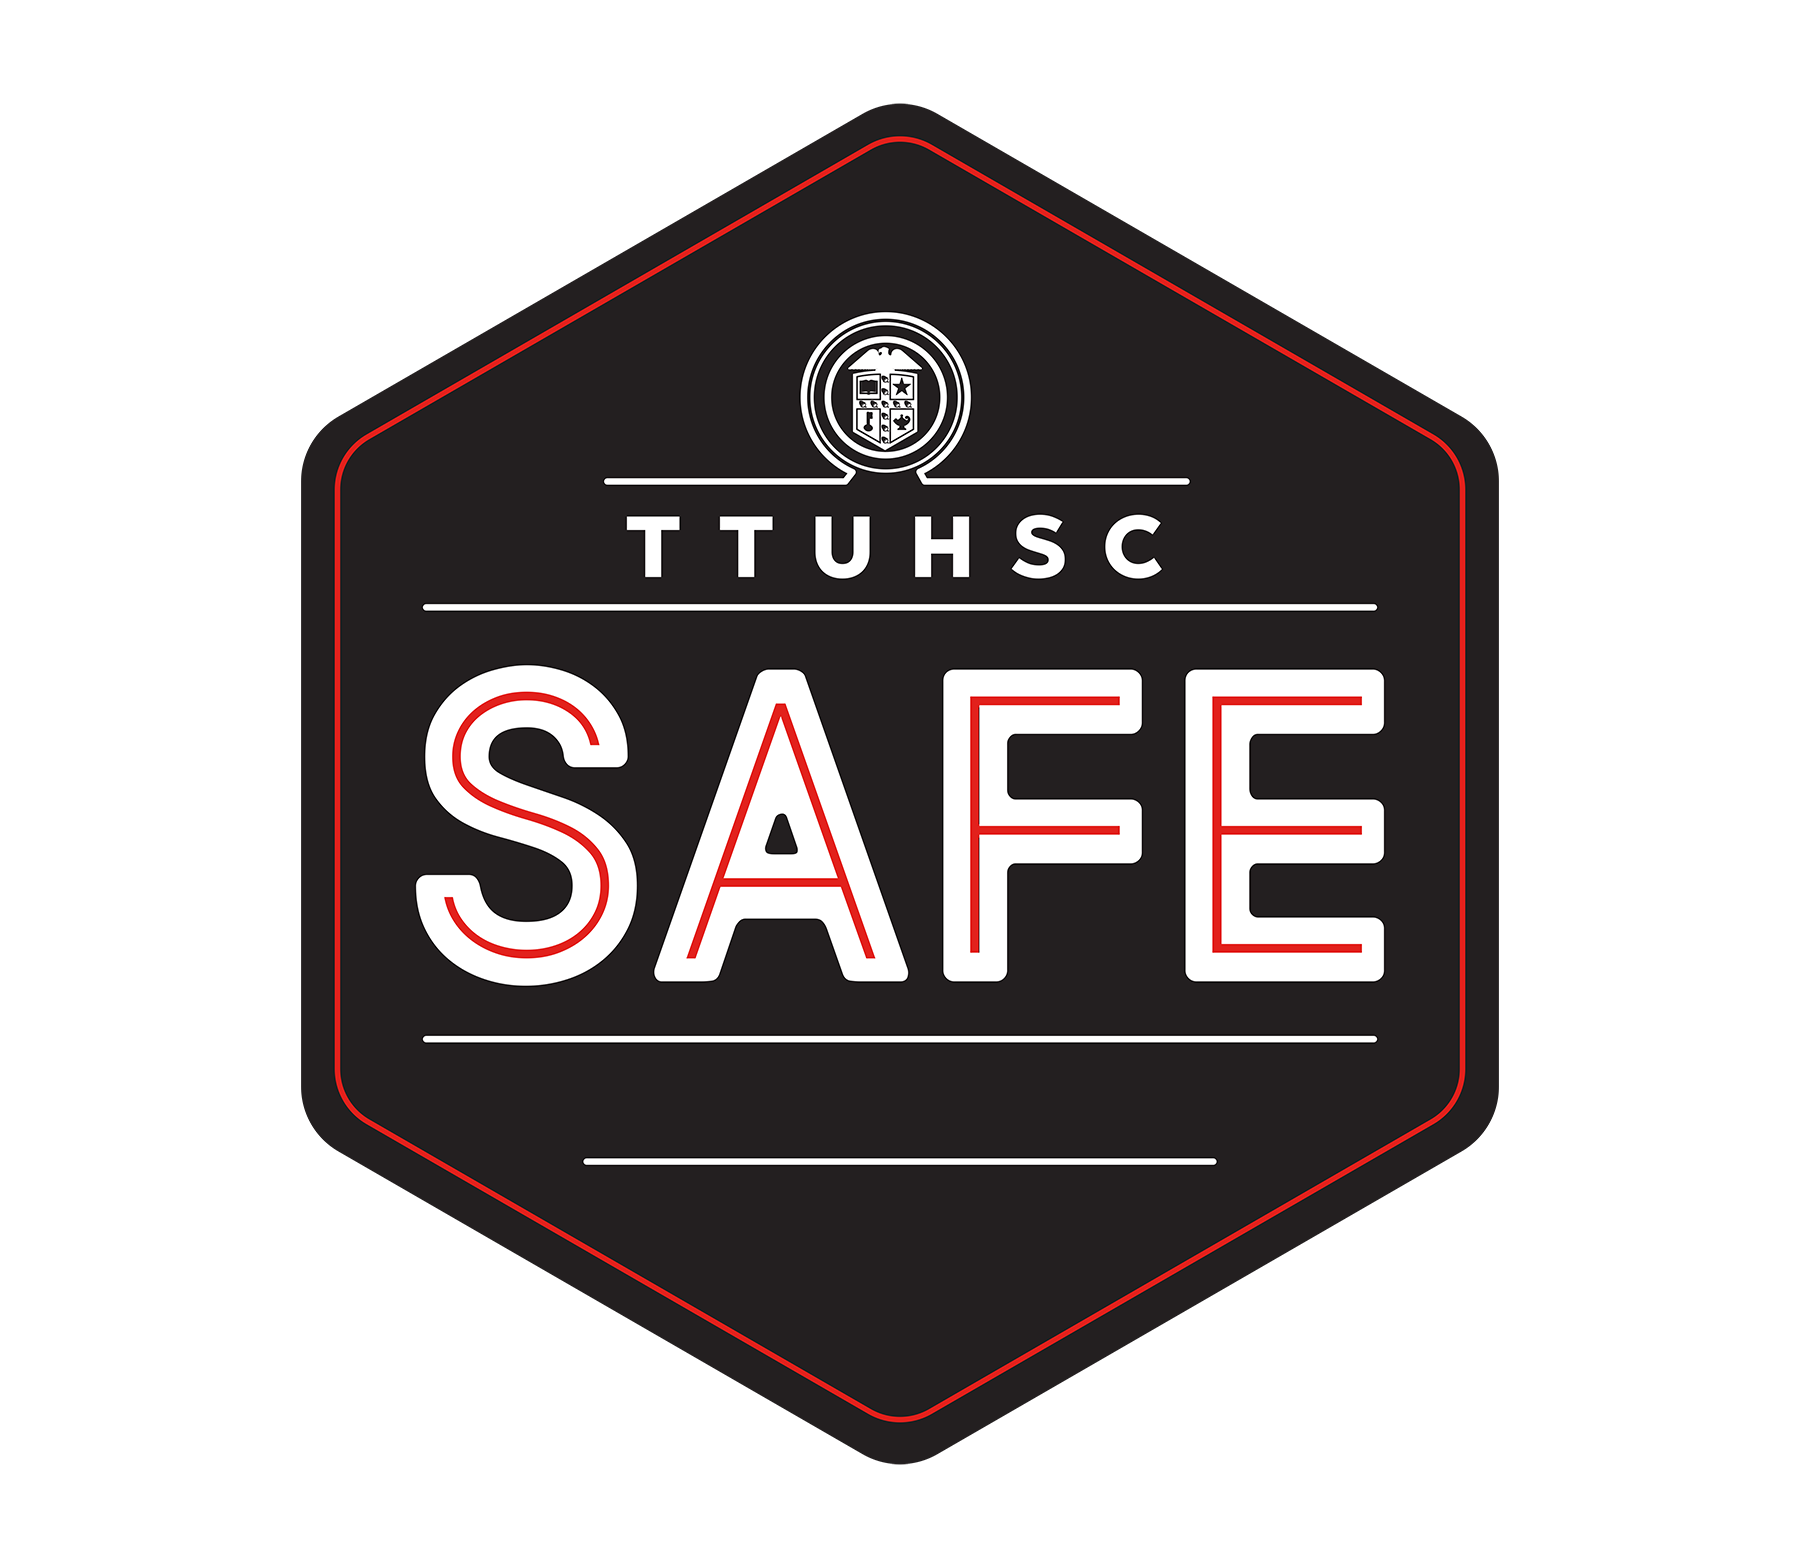 TTUHSC SAFE BADGE